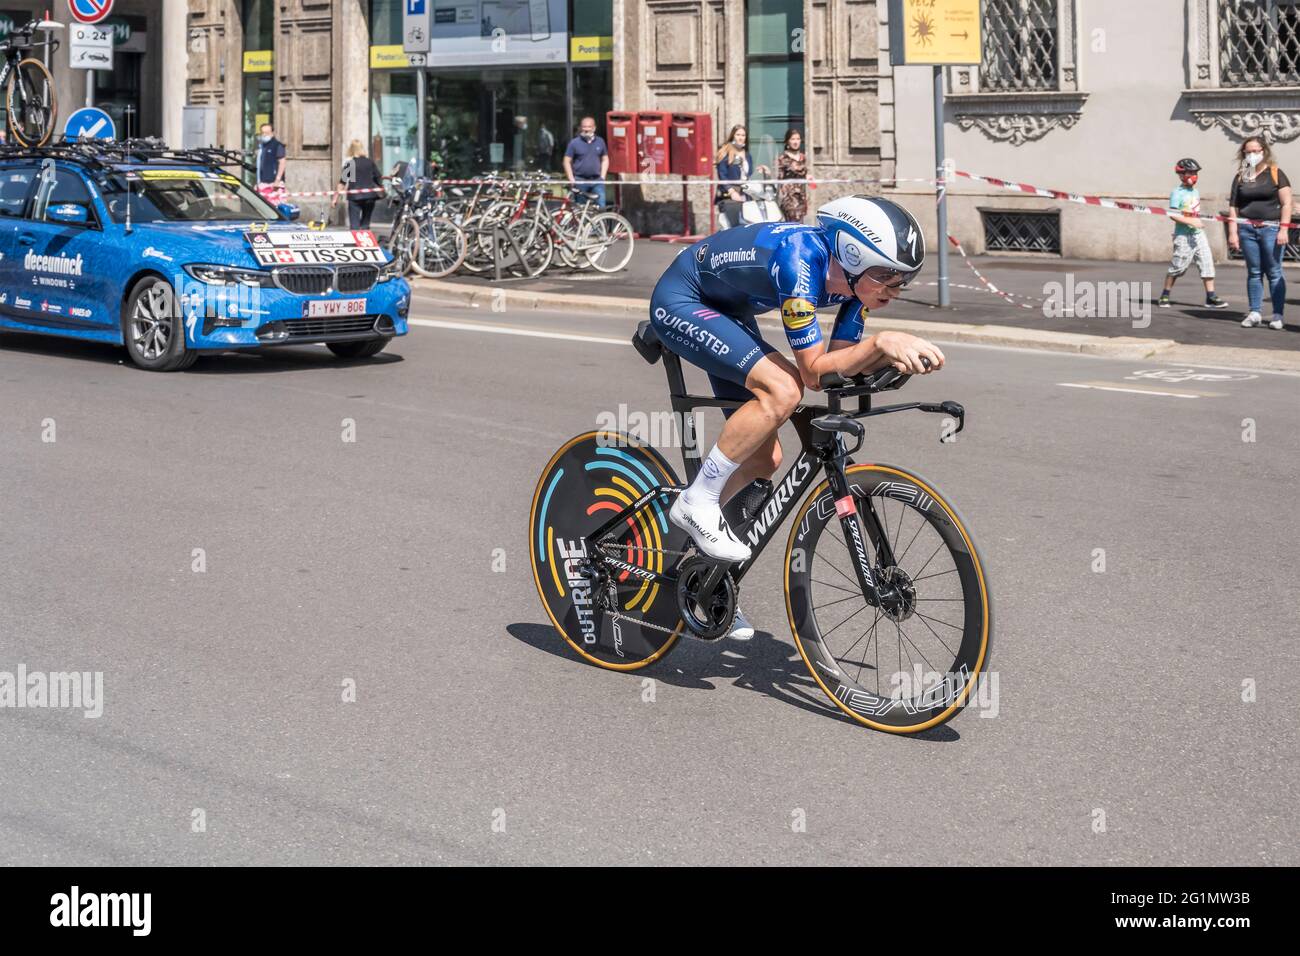 MAILAND, ITALIEN - MAI 30: Letzte Etappe des Giro 2021, James Knox-Konkurrent und Quick-Step Team folgen dem Auto mit hoher Geschwindigkeit während des Einzelzeitfahrens Stockfoto